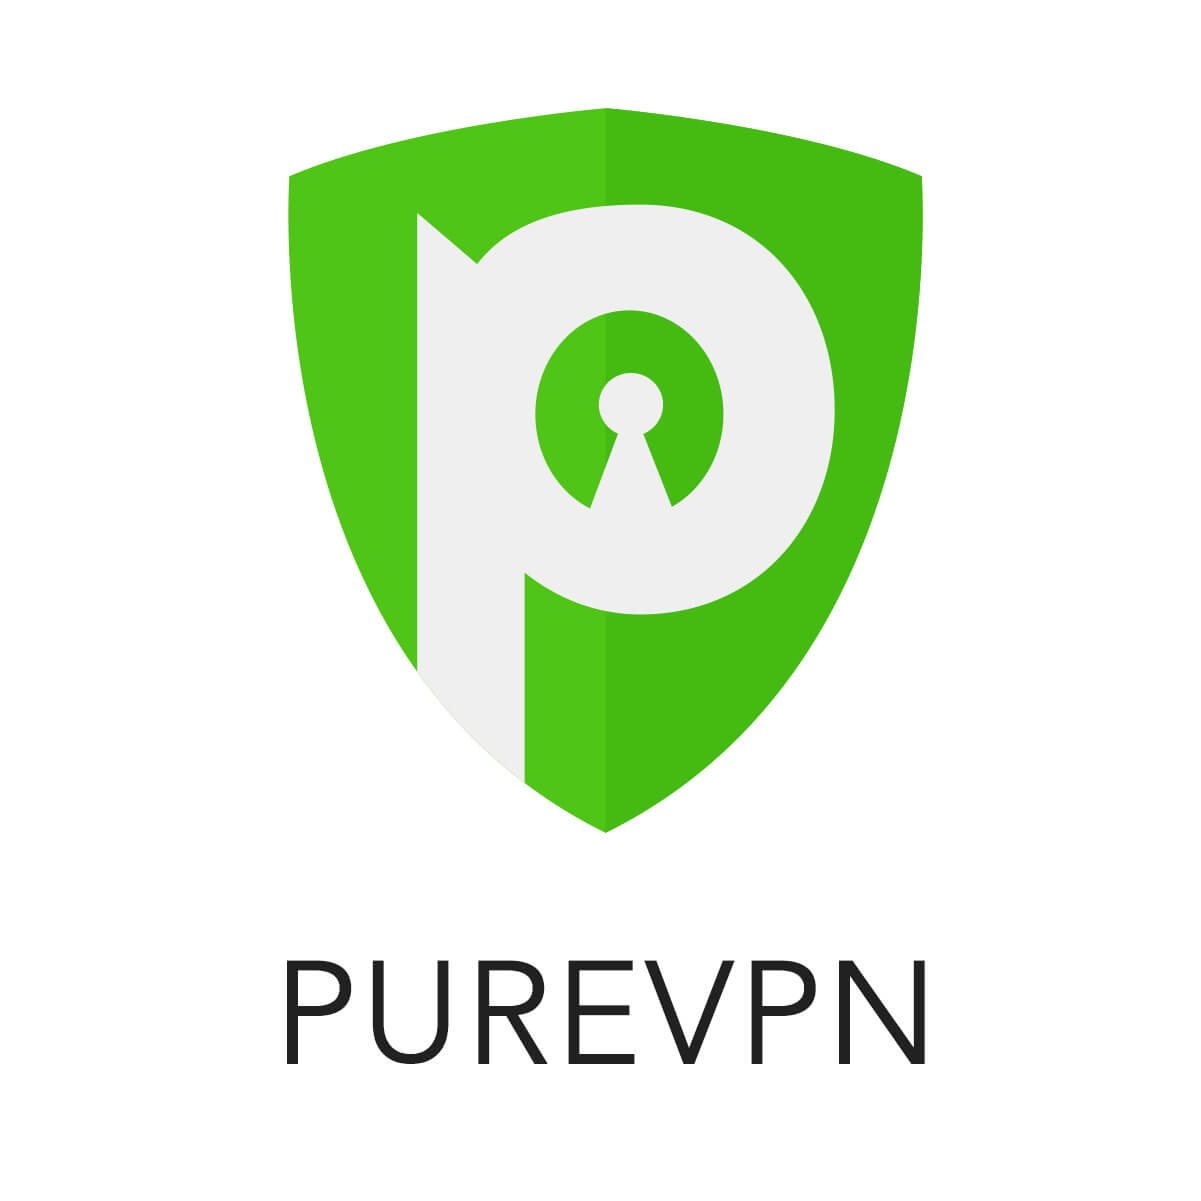 PureVPN Affiliate Program